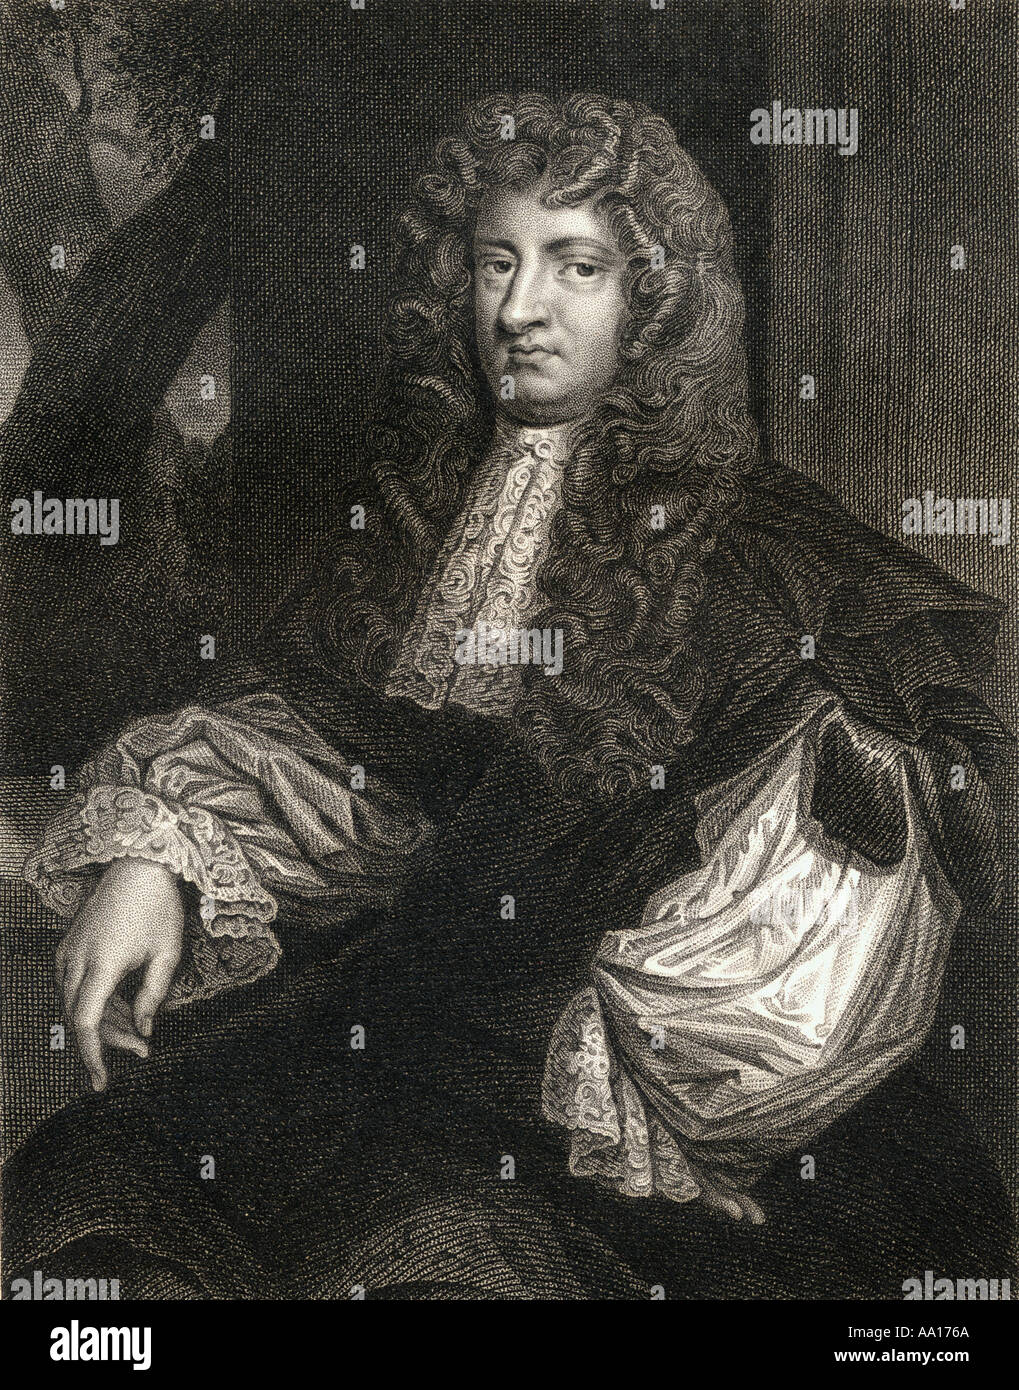 William Russell, Signore Russell, 1639 -1683. Inglese politico whig eseguito per tracciatura presumibilmente per uccidere il re Carlo II Foto Stock